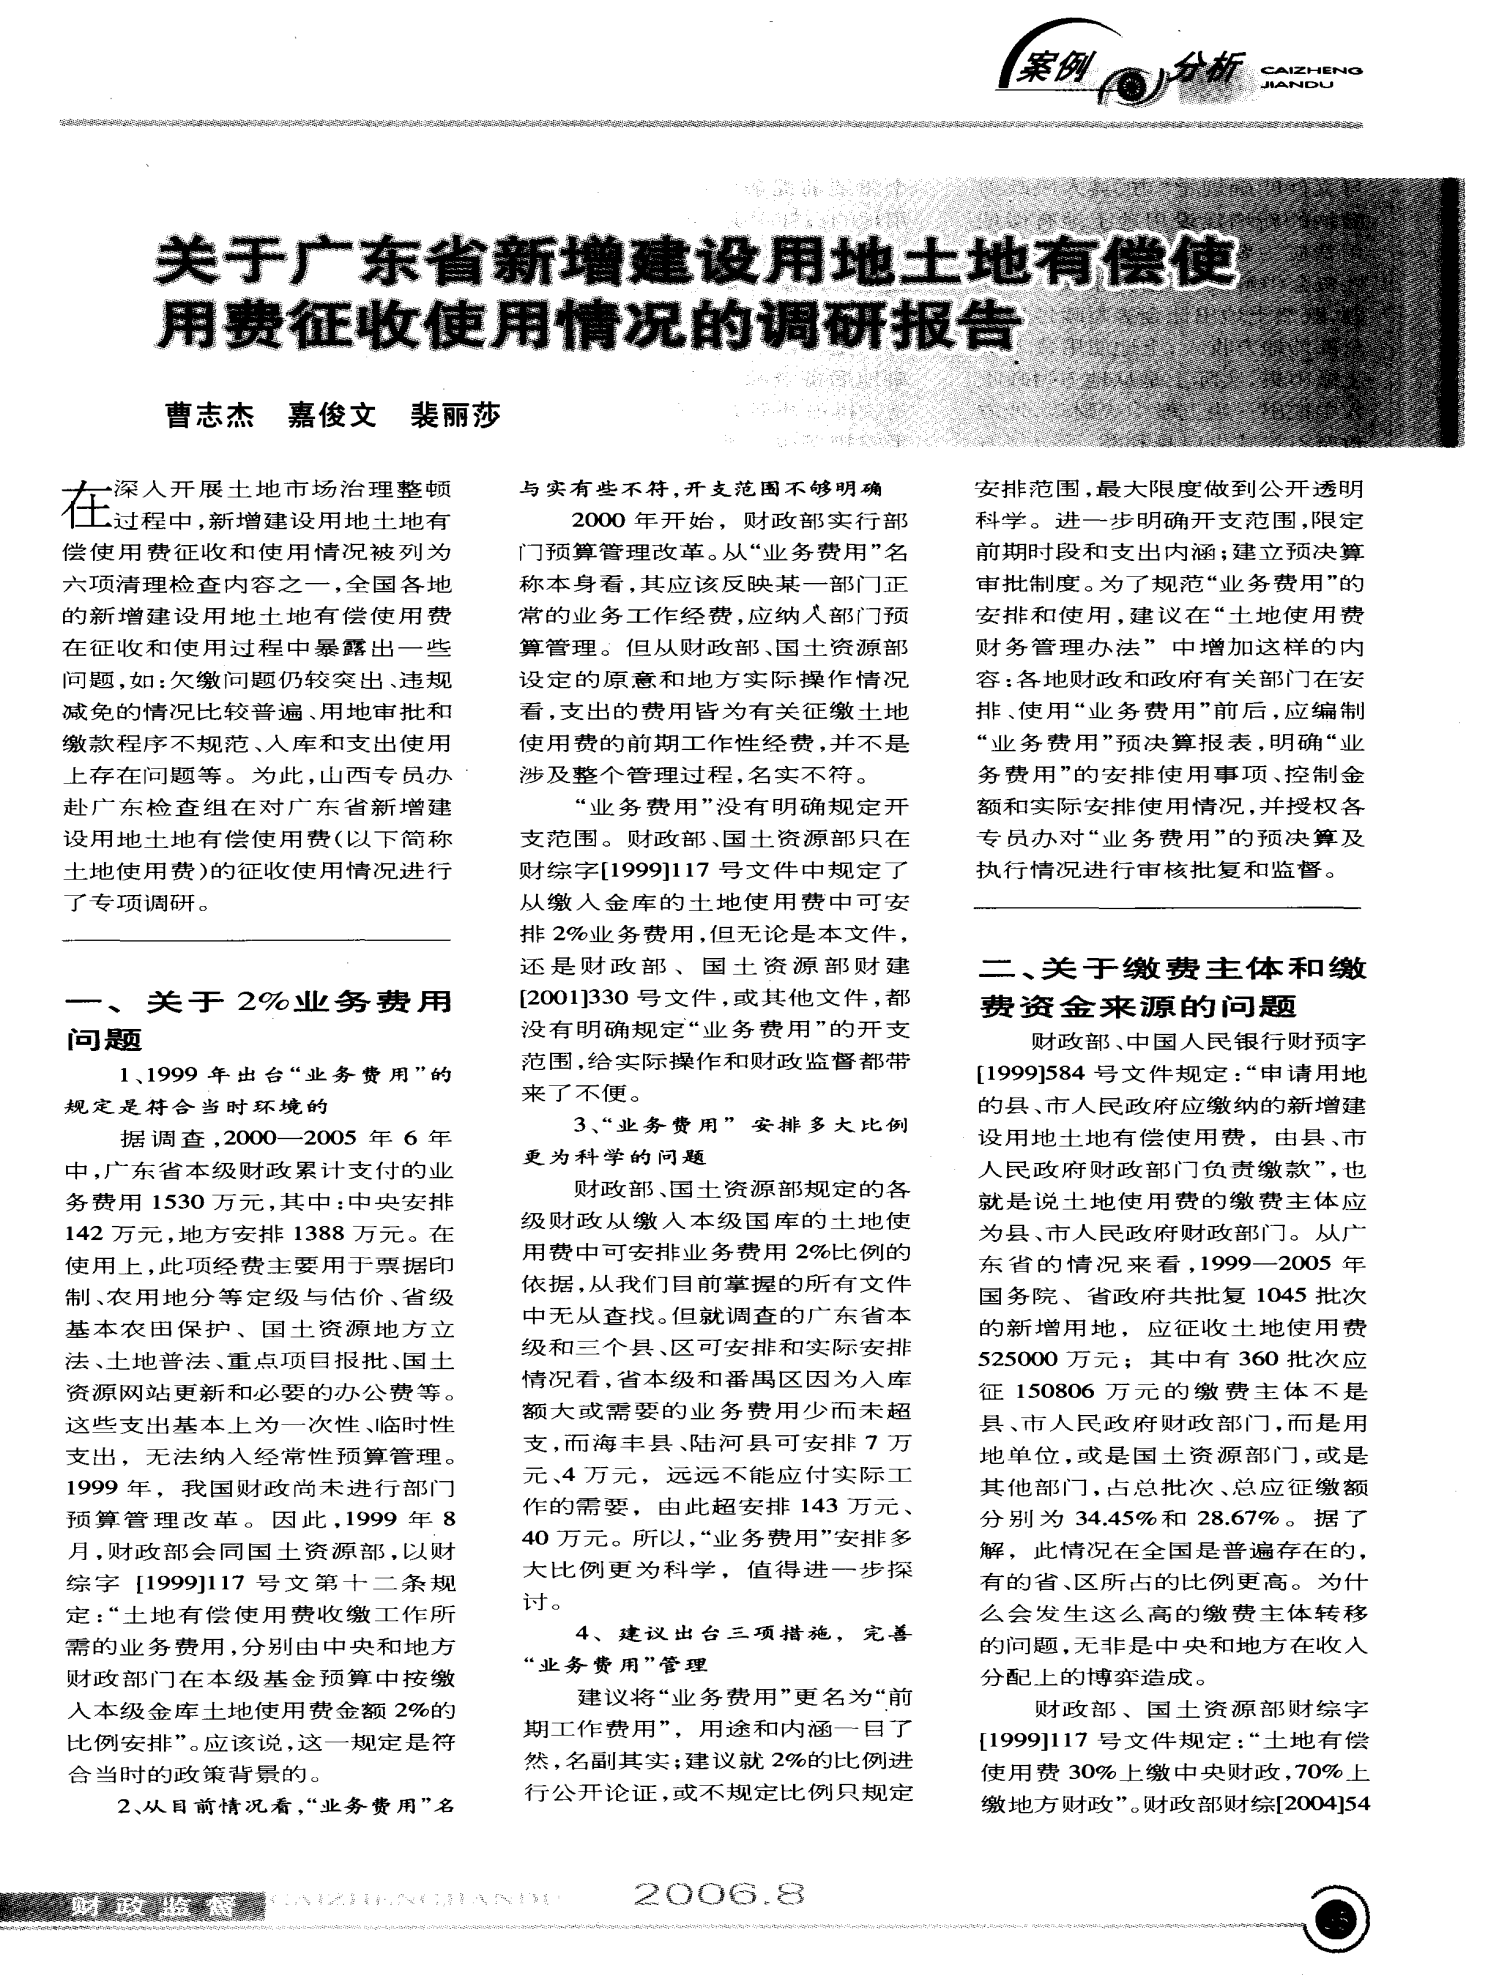 关于广东省新增建设用地土地有偿使用费征收使用情况的调研报告